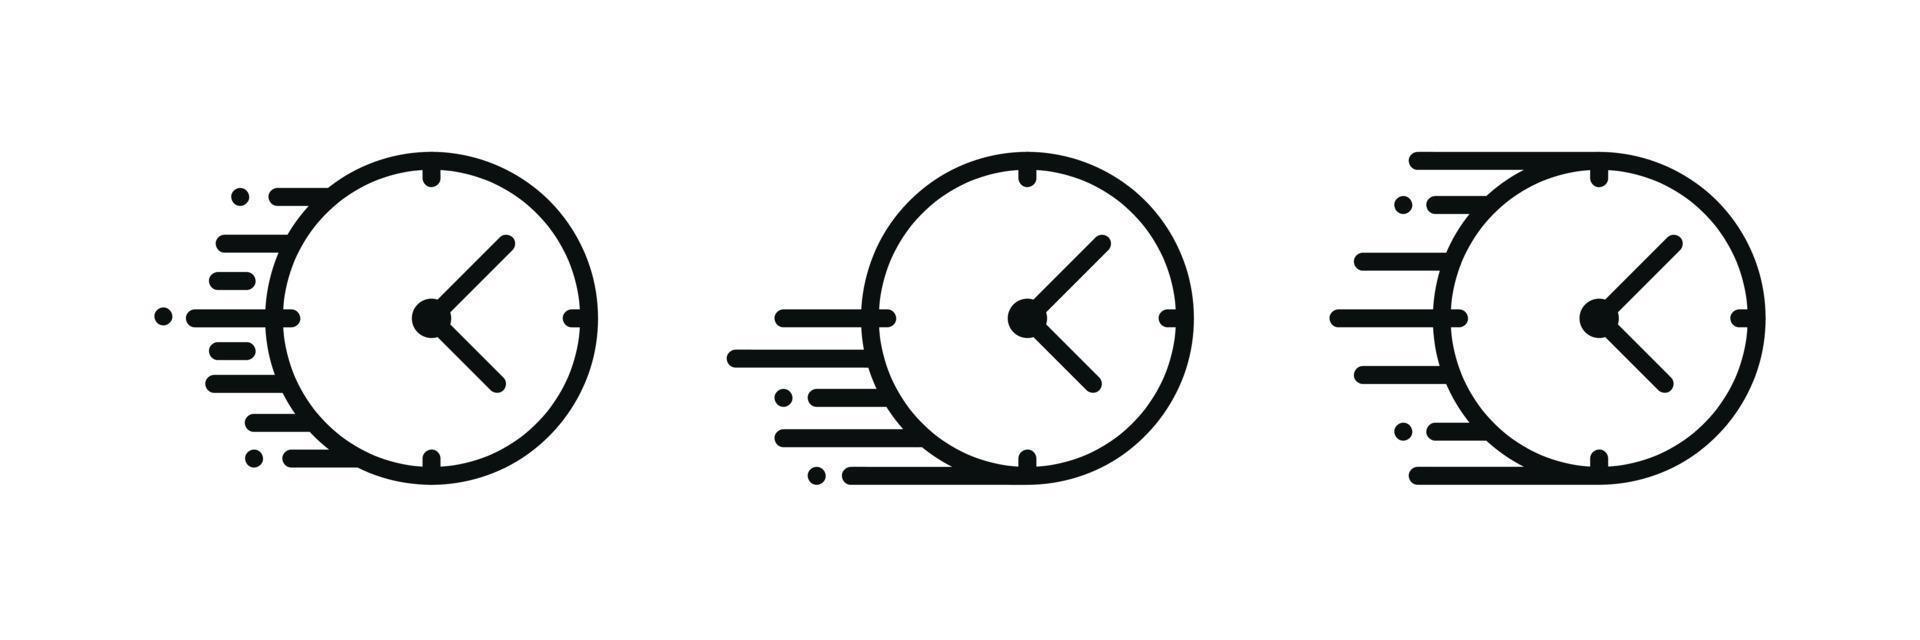 icône plate de silhouette d'horloge, conception de vecteur simple avec l'ombre. illustration du chronomètre. appareil pour afficher l'heure et la limite de temps. symbole de vitesse. illustration de logo de symboles de signe plat chronomètre et horloge.